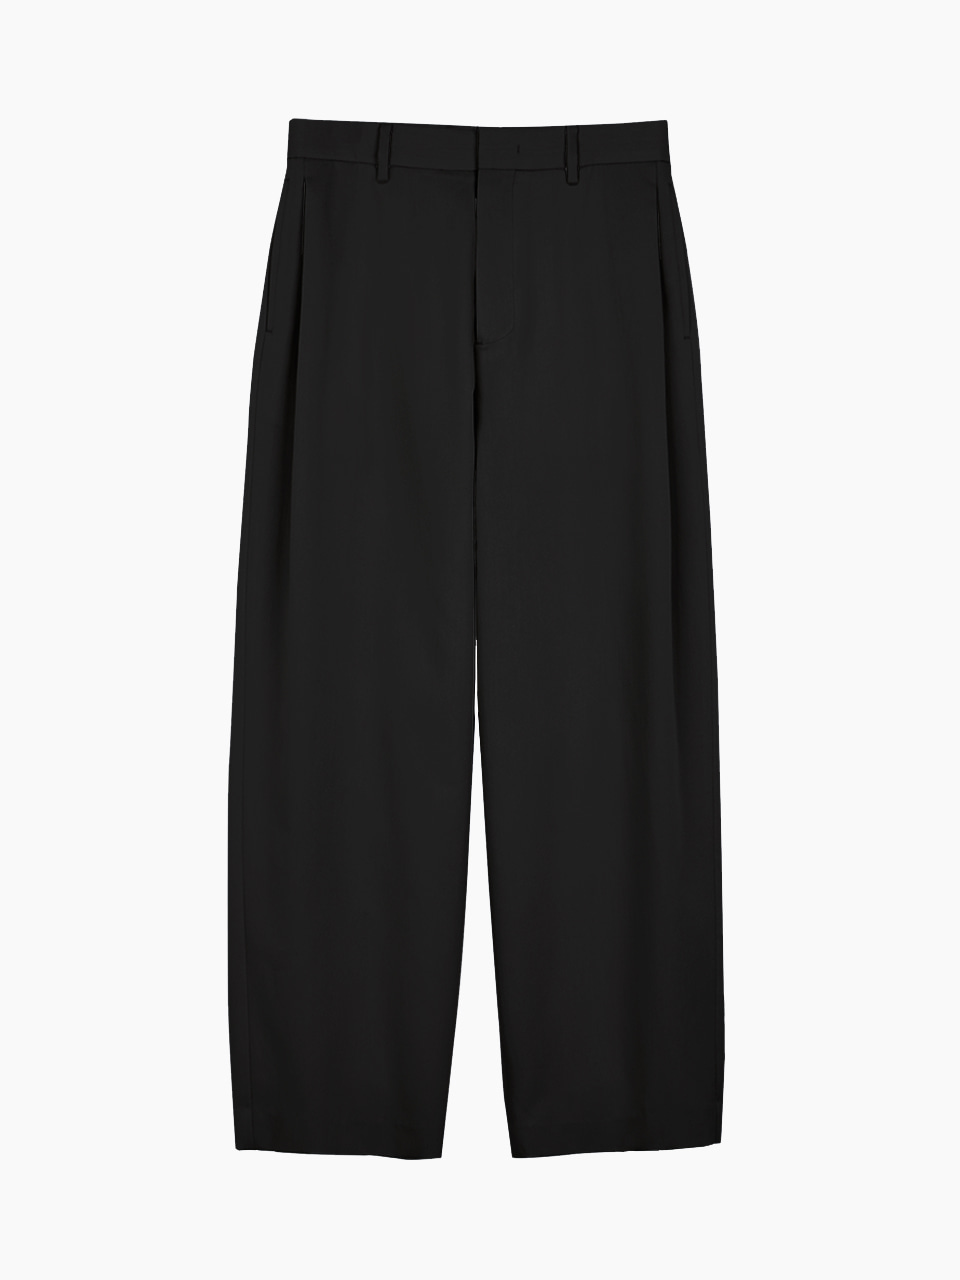 Twill Weave Side Tuck Pants (Black)